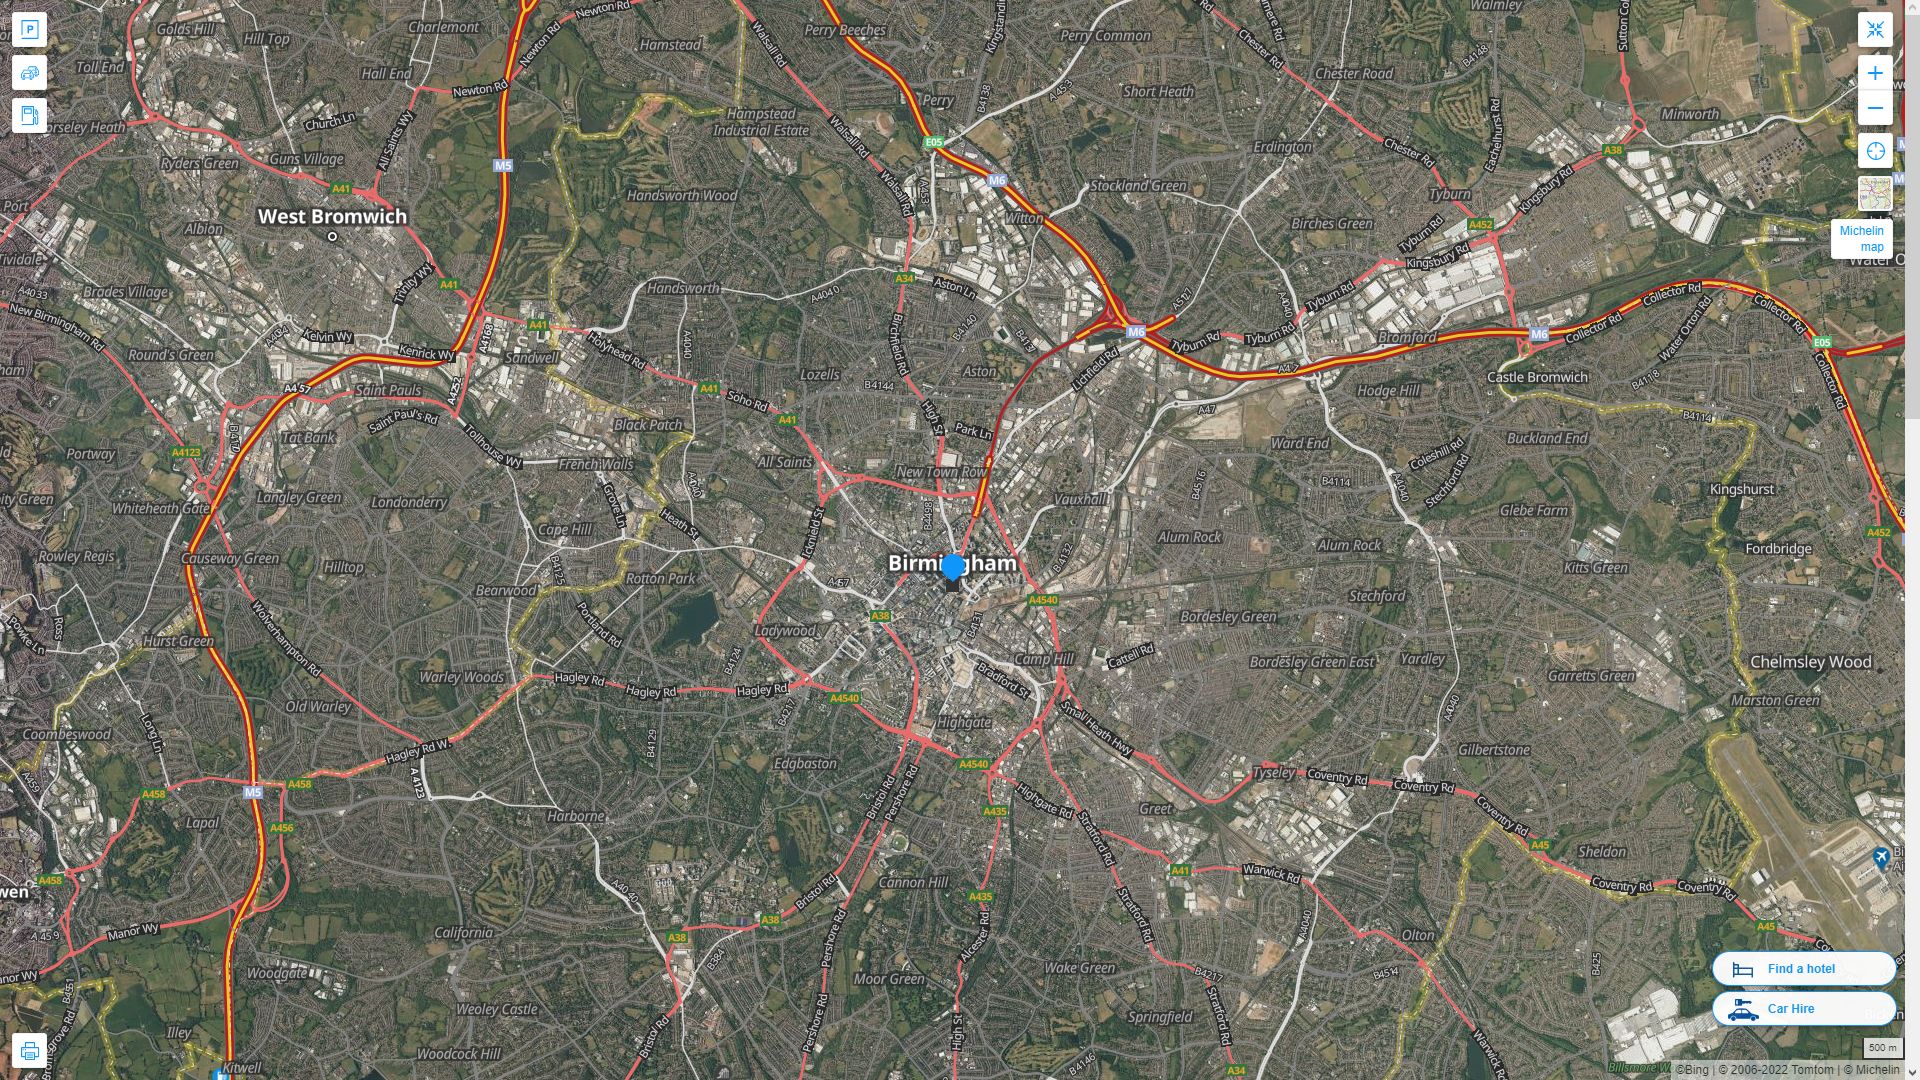 Birmingham Royaume Uni Autoroute et carte routiere avec vue satellite